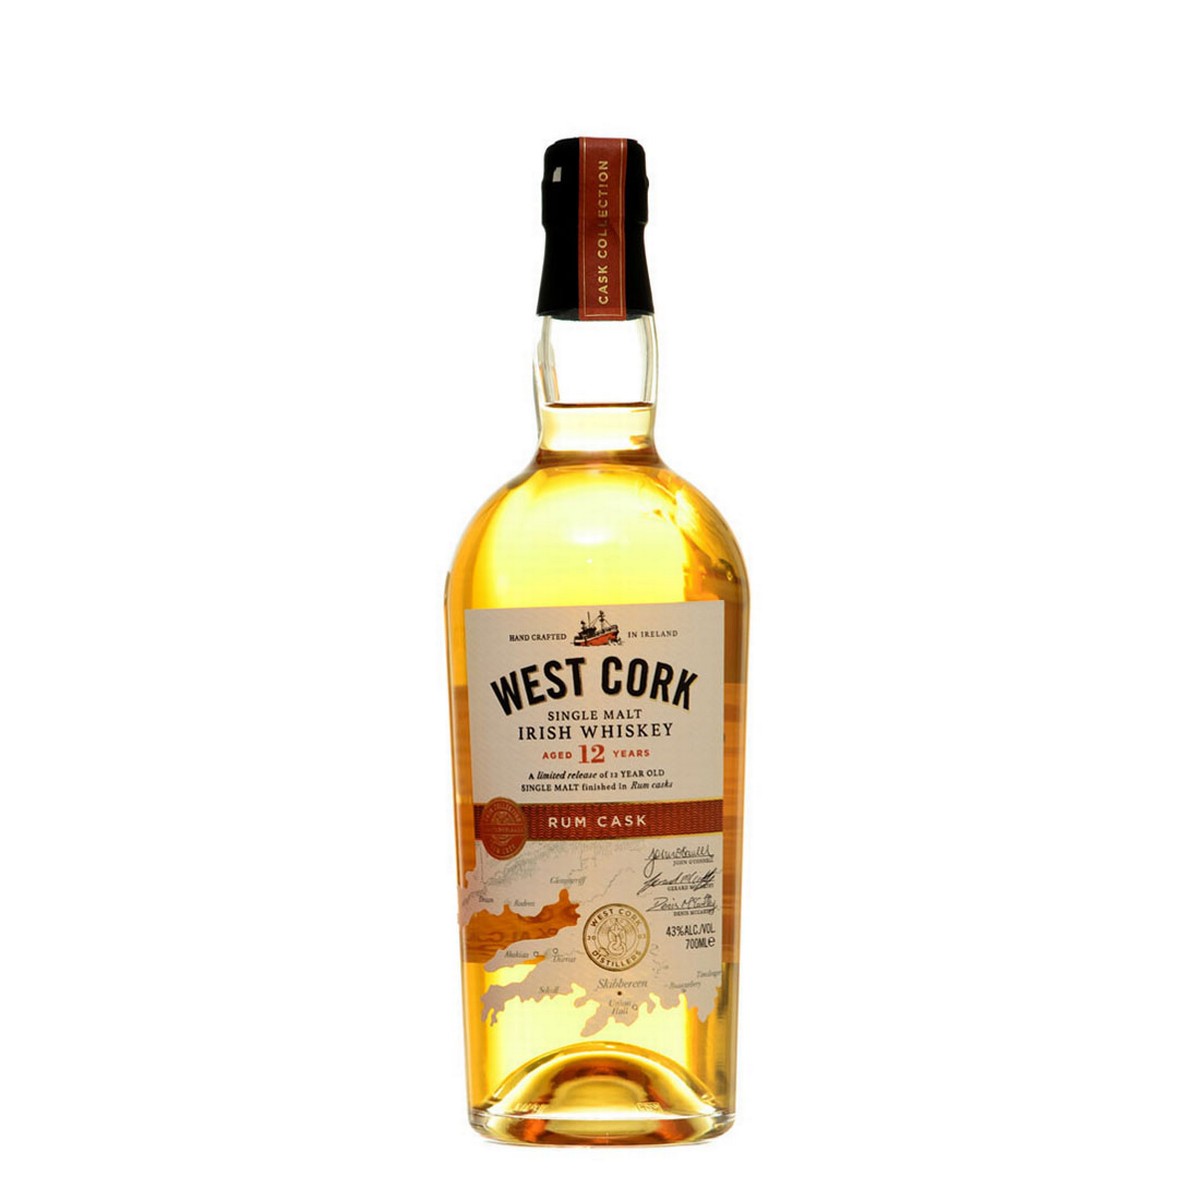 West Cork 12 Y.O. Single Malt Rum Cask Finish